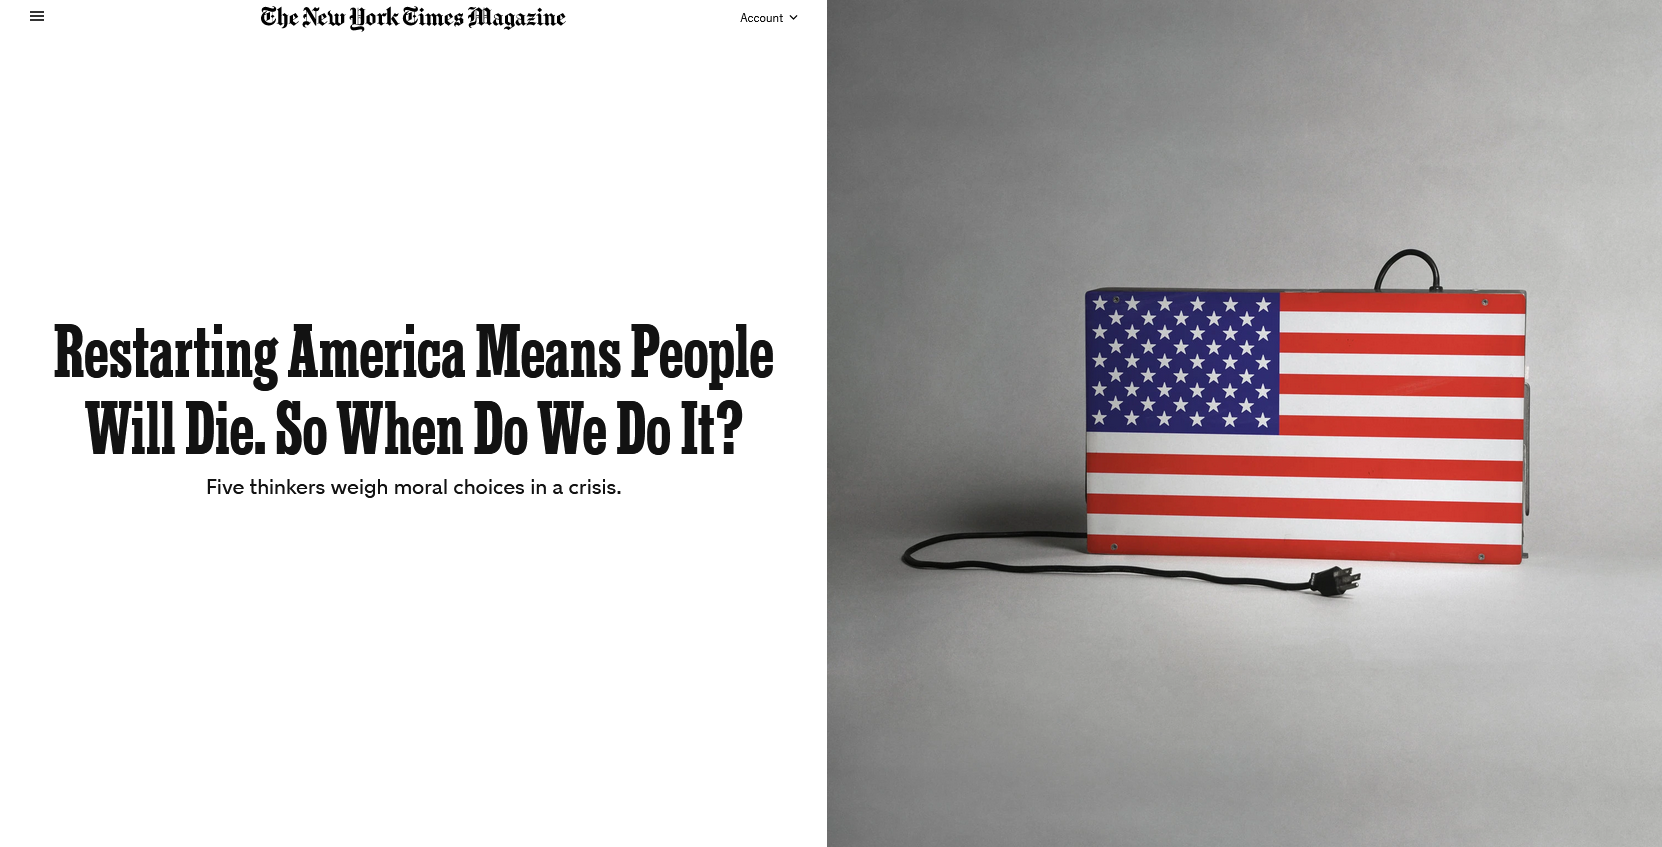 NYT: Restarting America